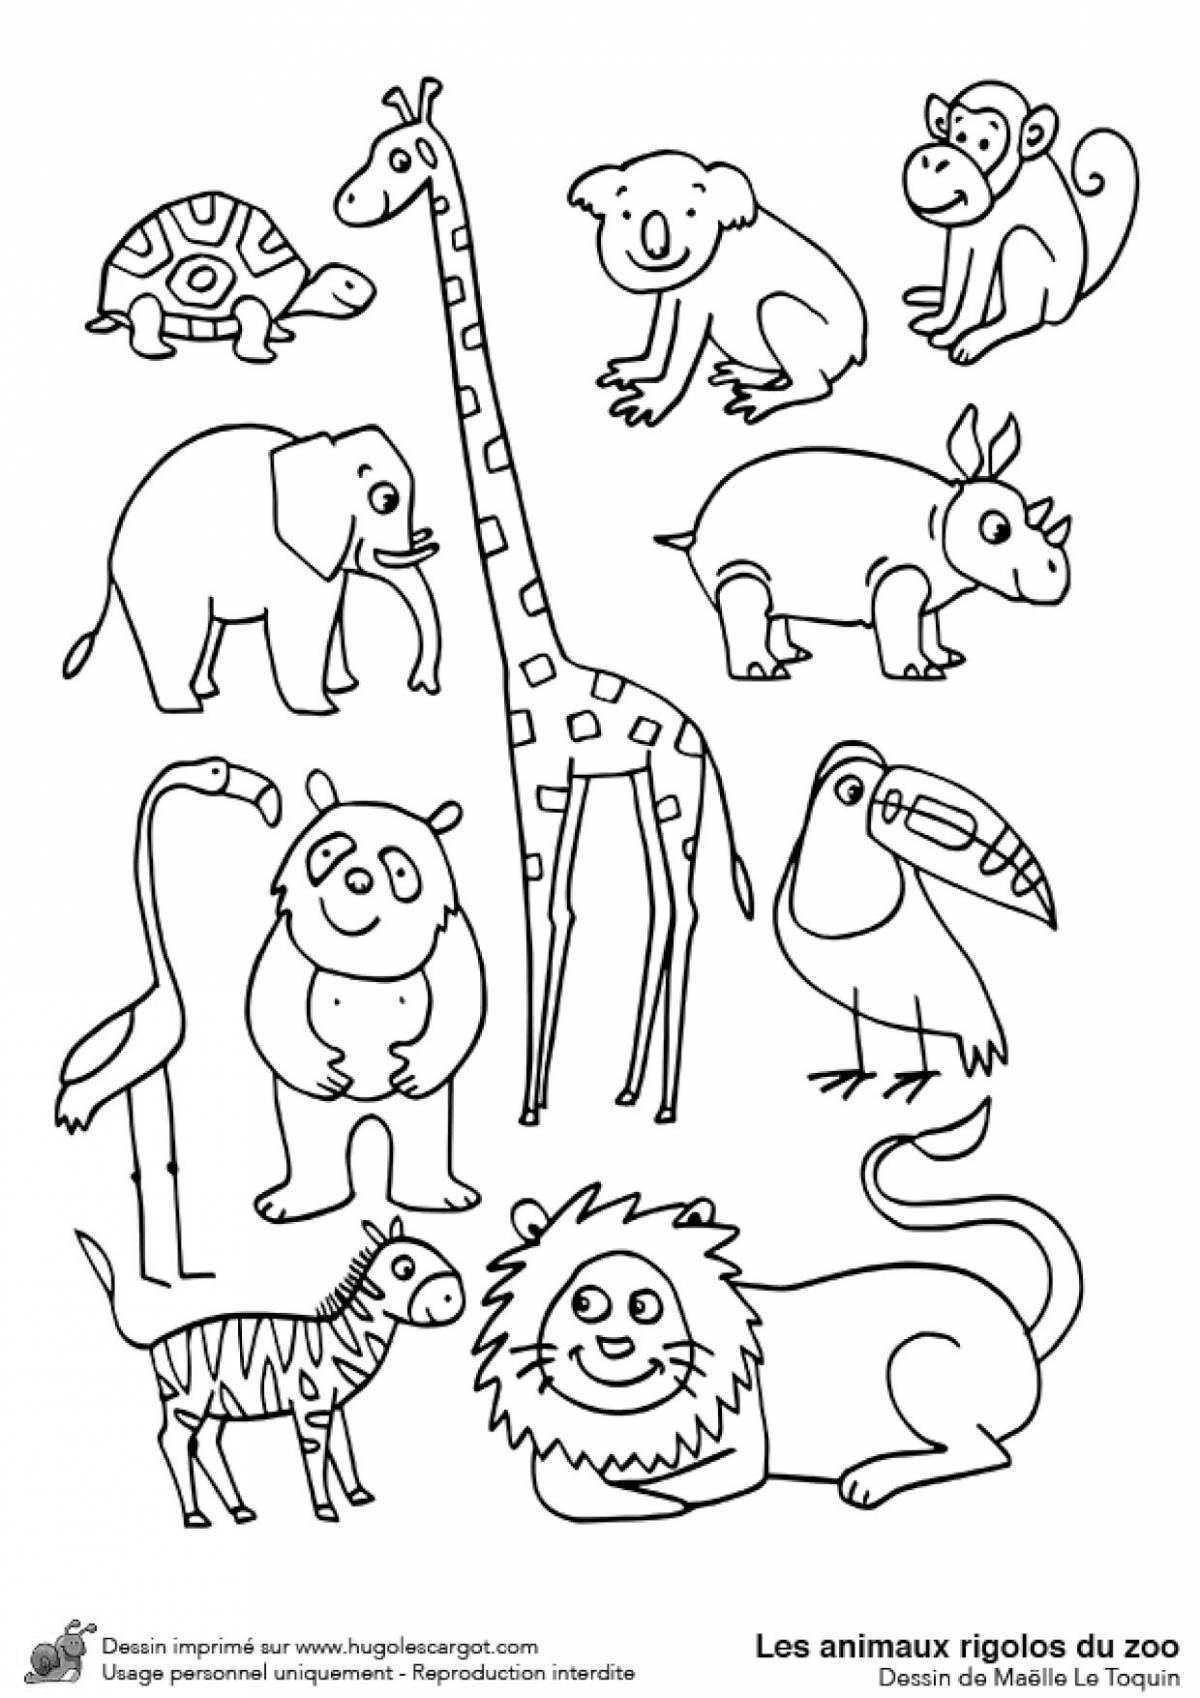 Яркая раскраска зоопарка для детей 3-4 лет